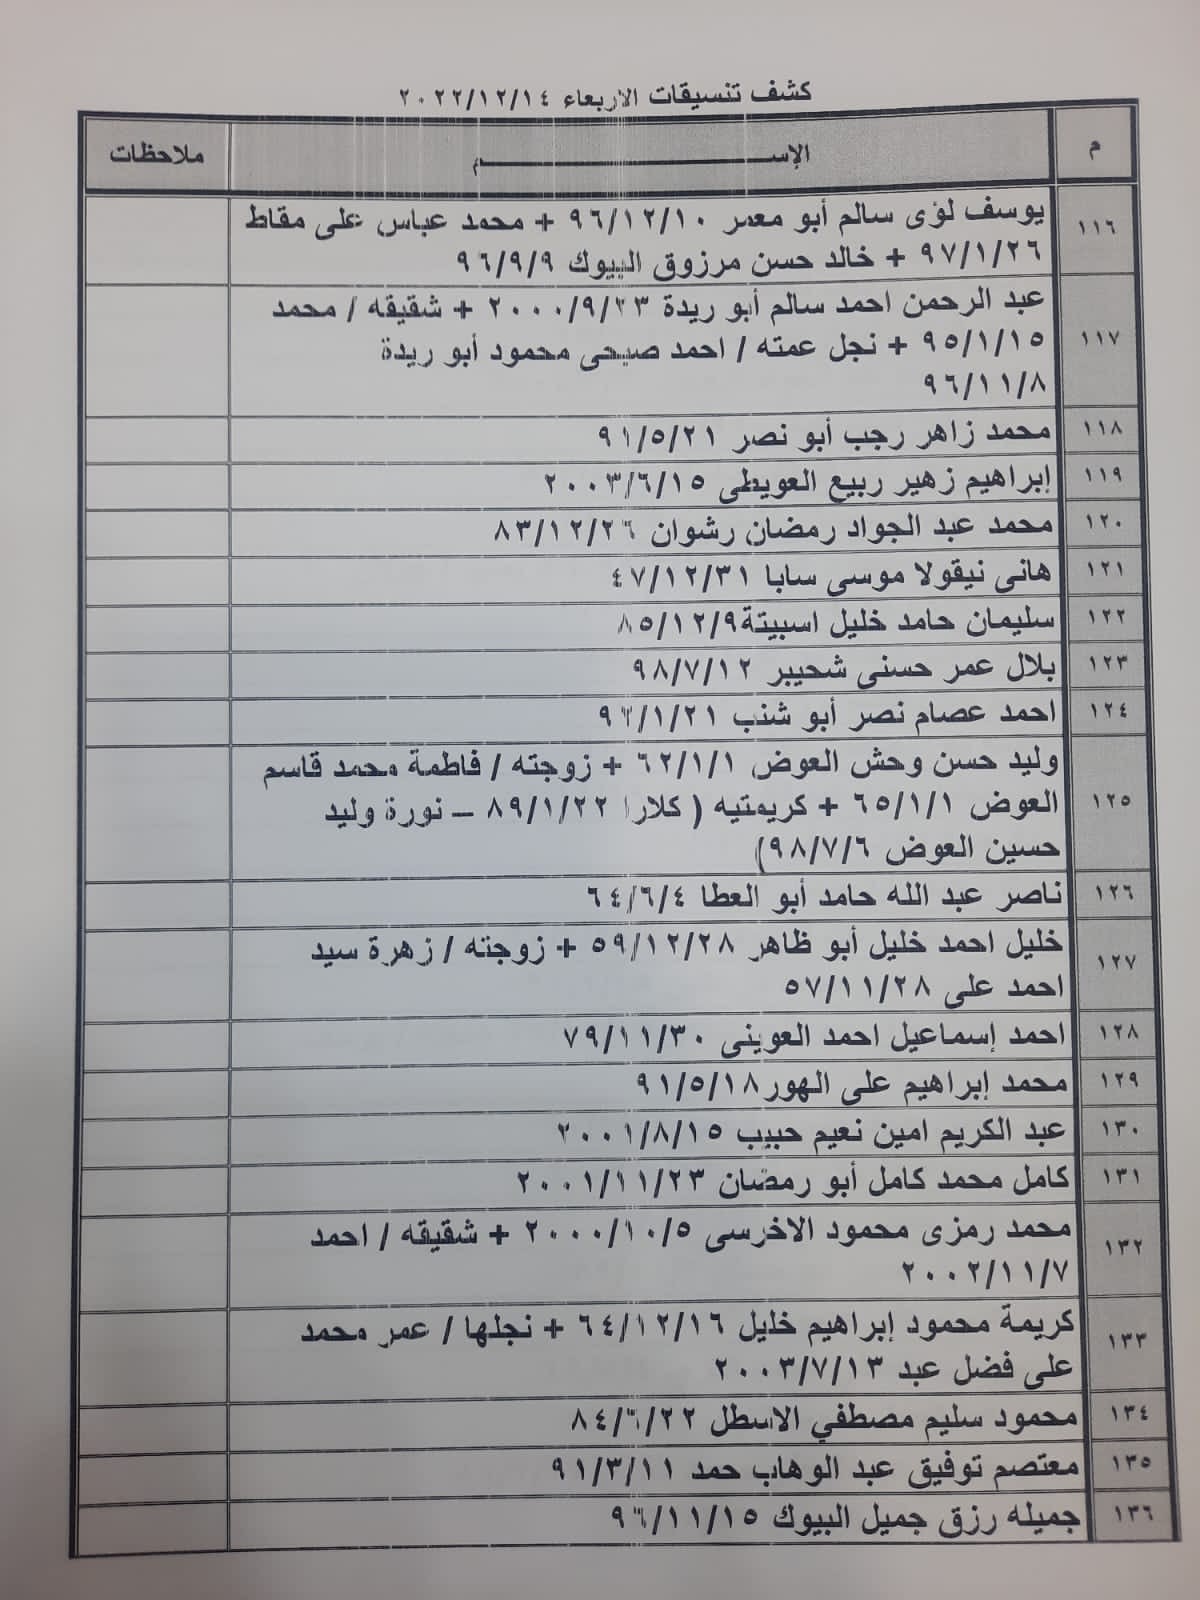 بالأسماء: كشف "التنسيقات المصرية" للسفر عبر معبر رفح غدًا الأربعاء 14 ديسمبر 2022